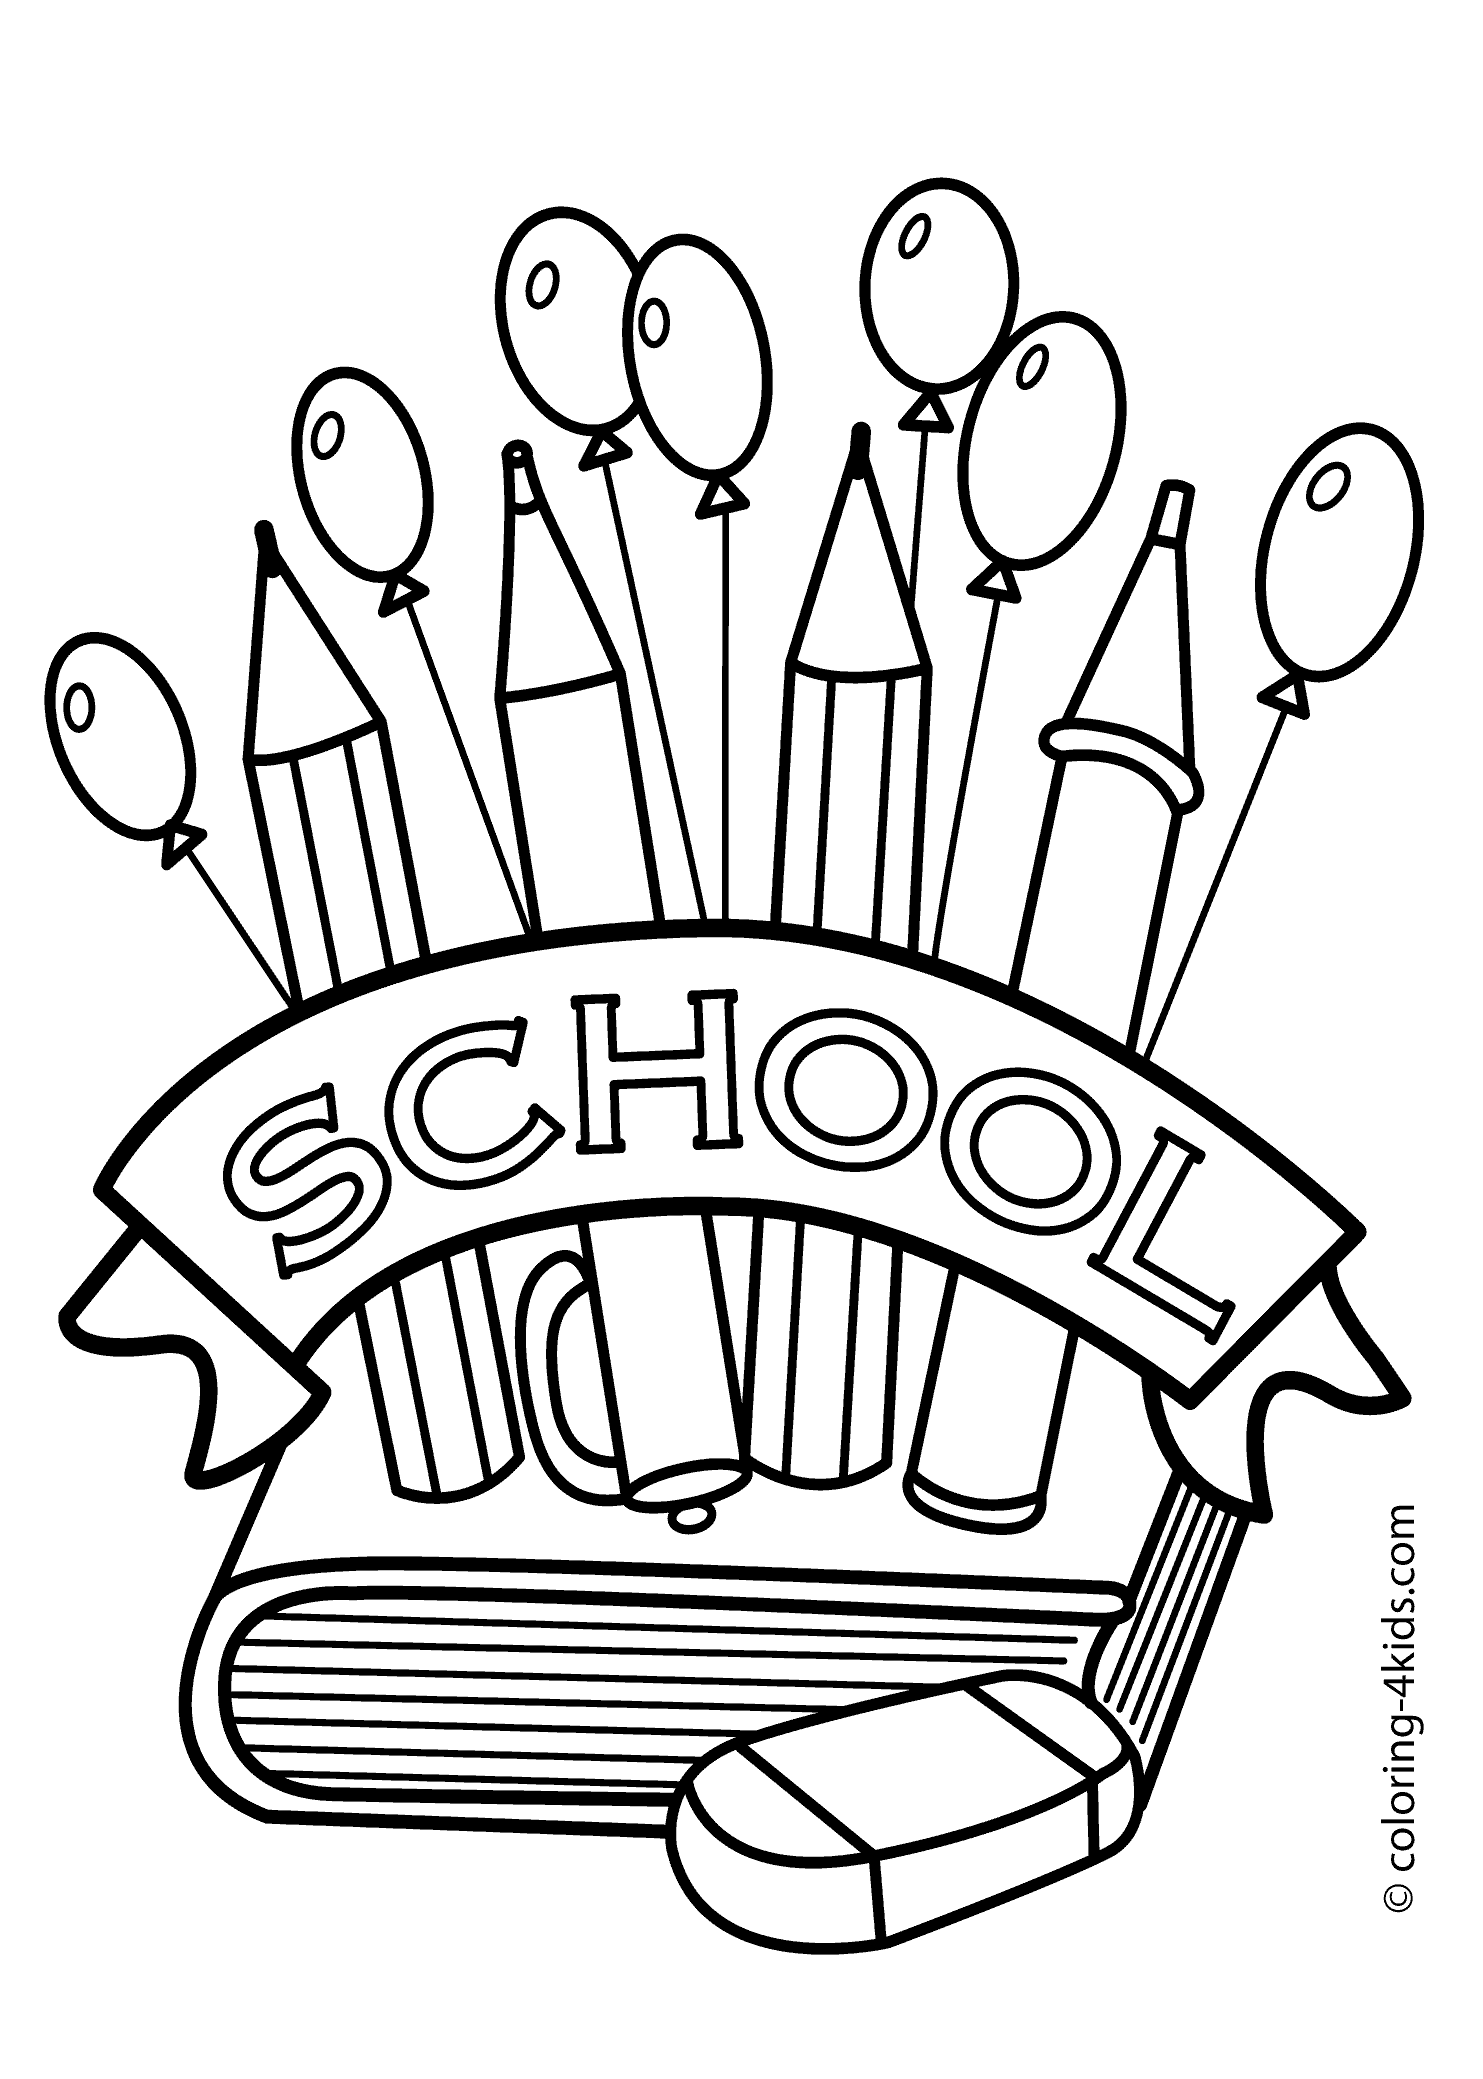 Image #20056 - Coloriage école gratuit